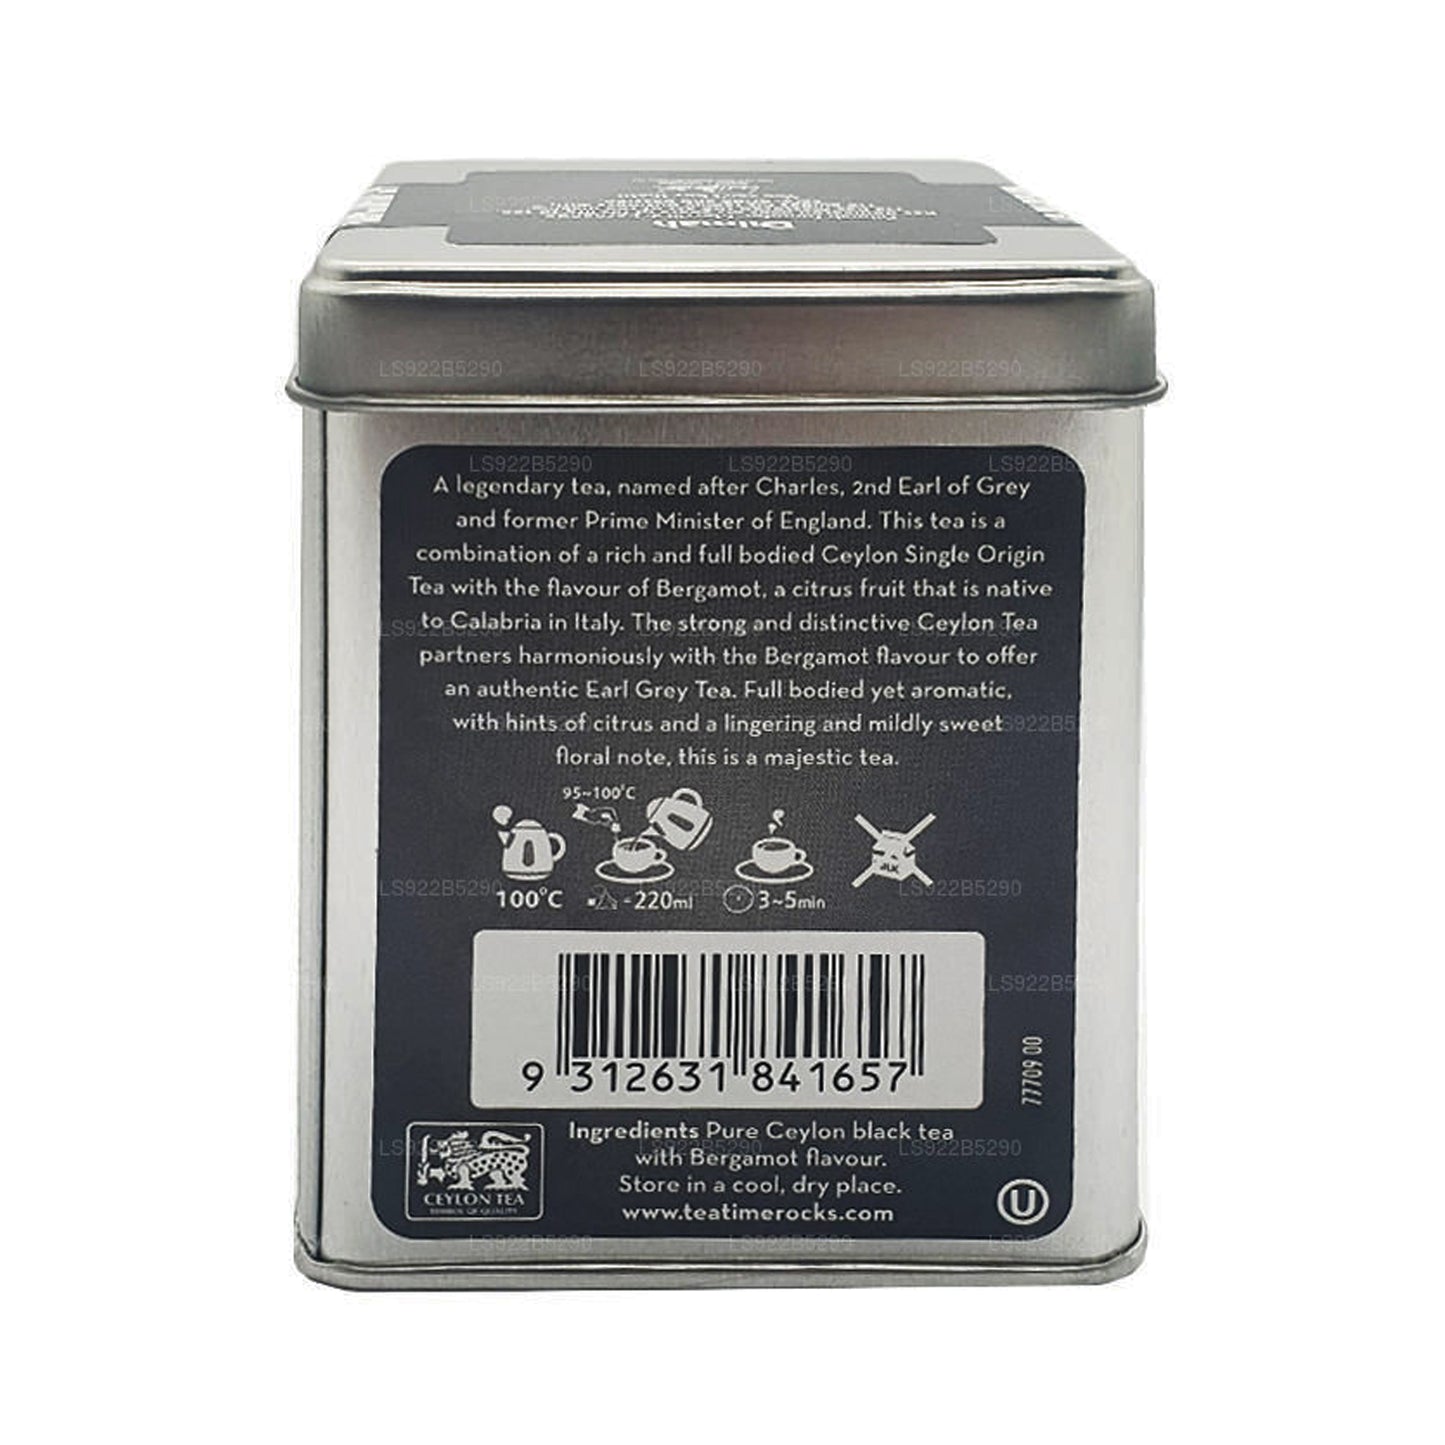 Dilmah t-Series The Original Earl Grey Tea (40g) 20 Tea Bags